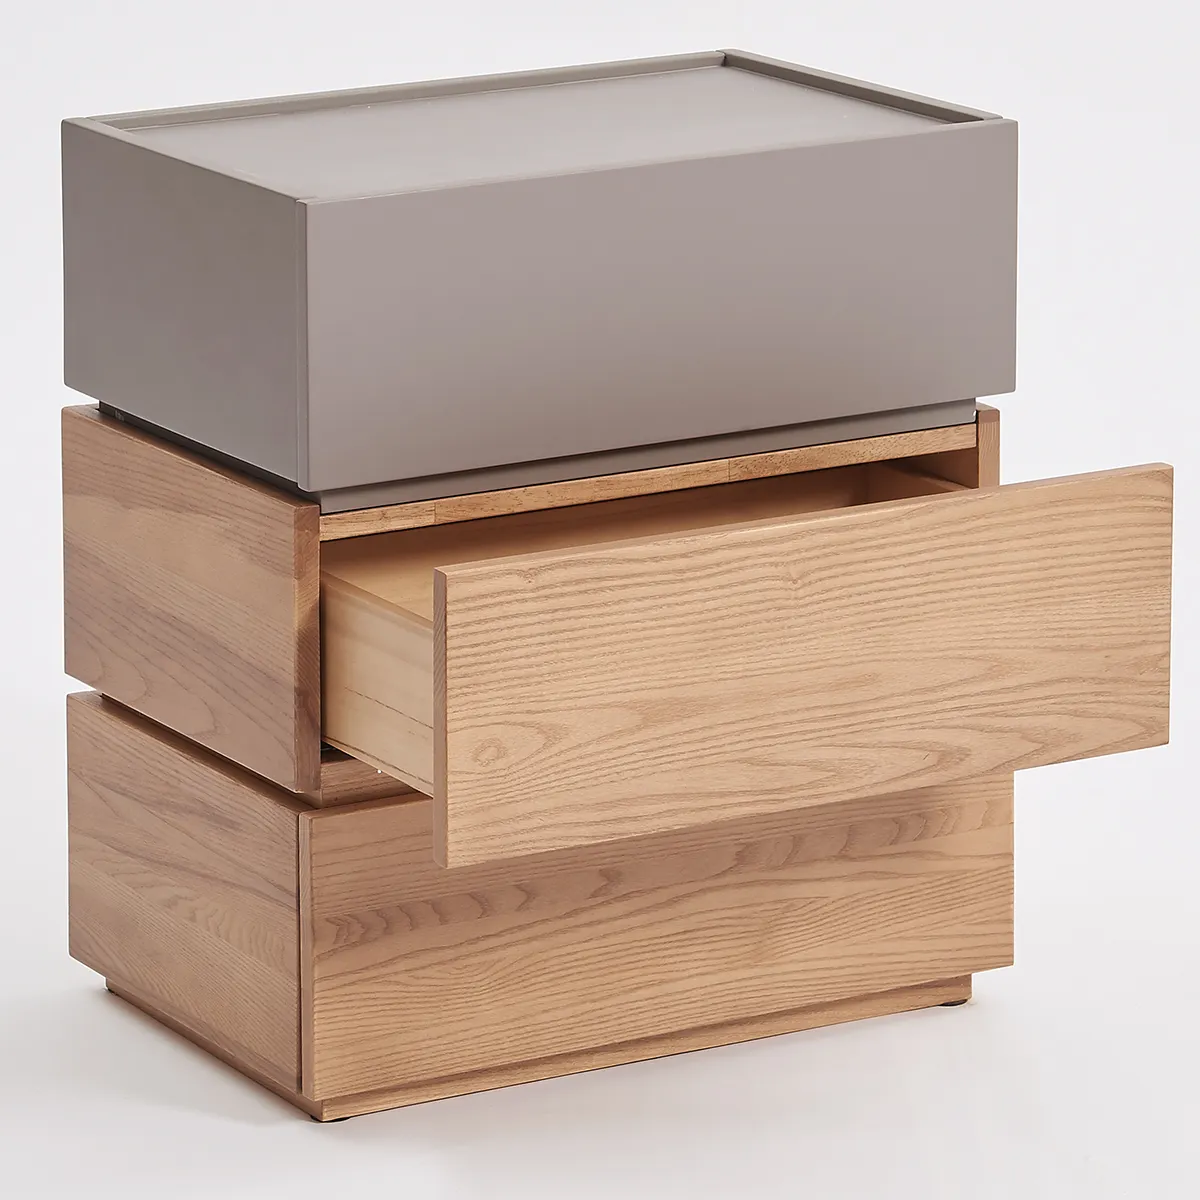 Cassettiera in legno massello cassettiera impilabile in legno armadi in legno tavolino in legno naturale camera da letto mobili soggiorno